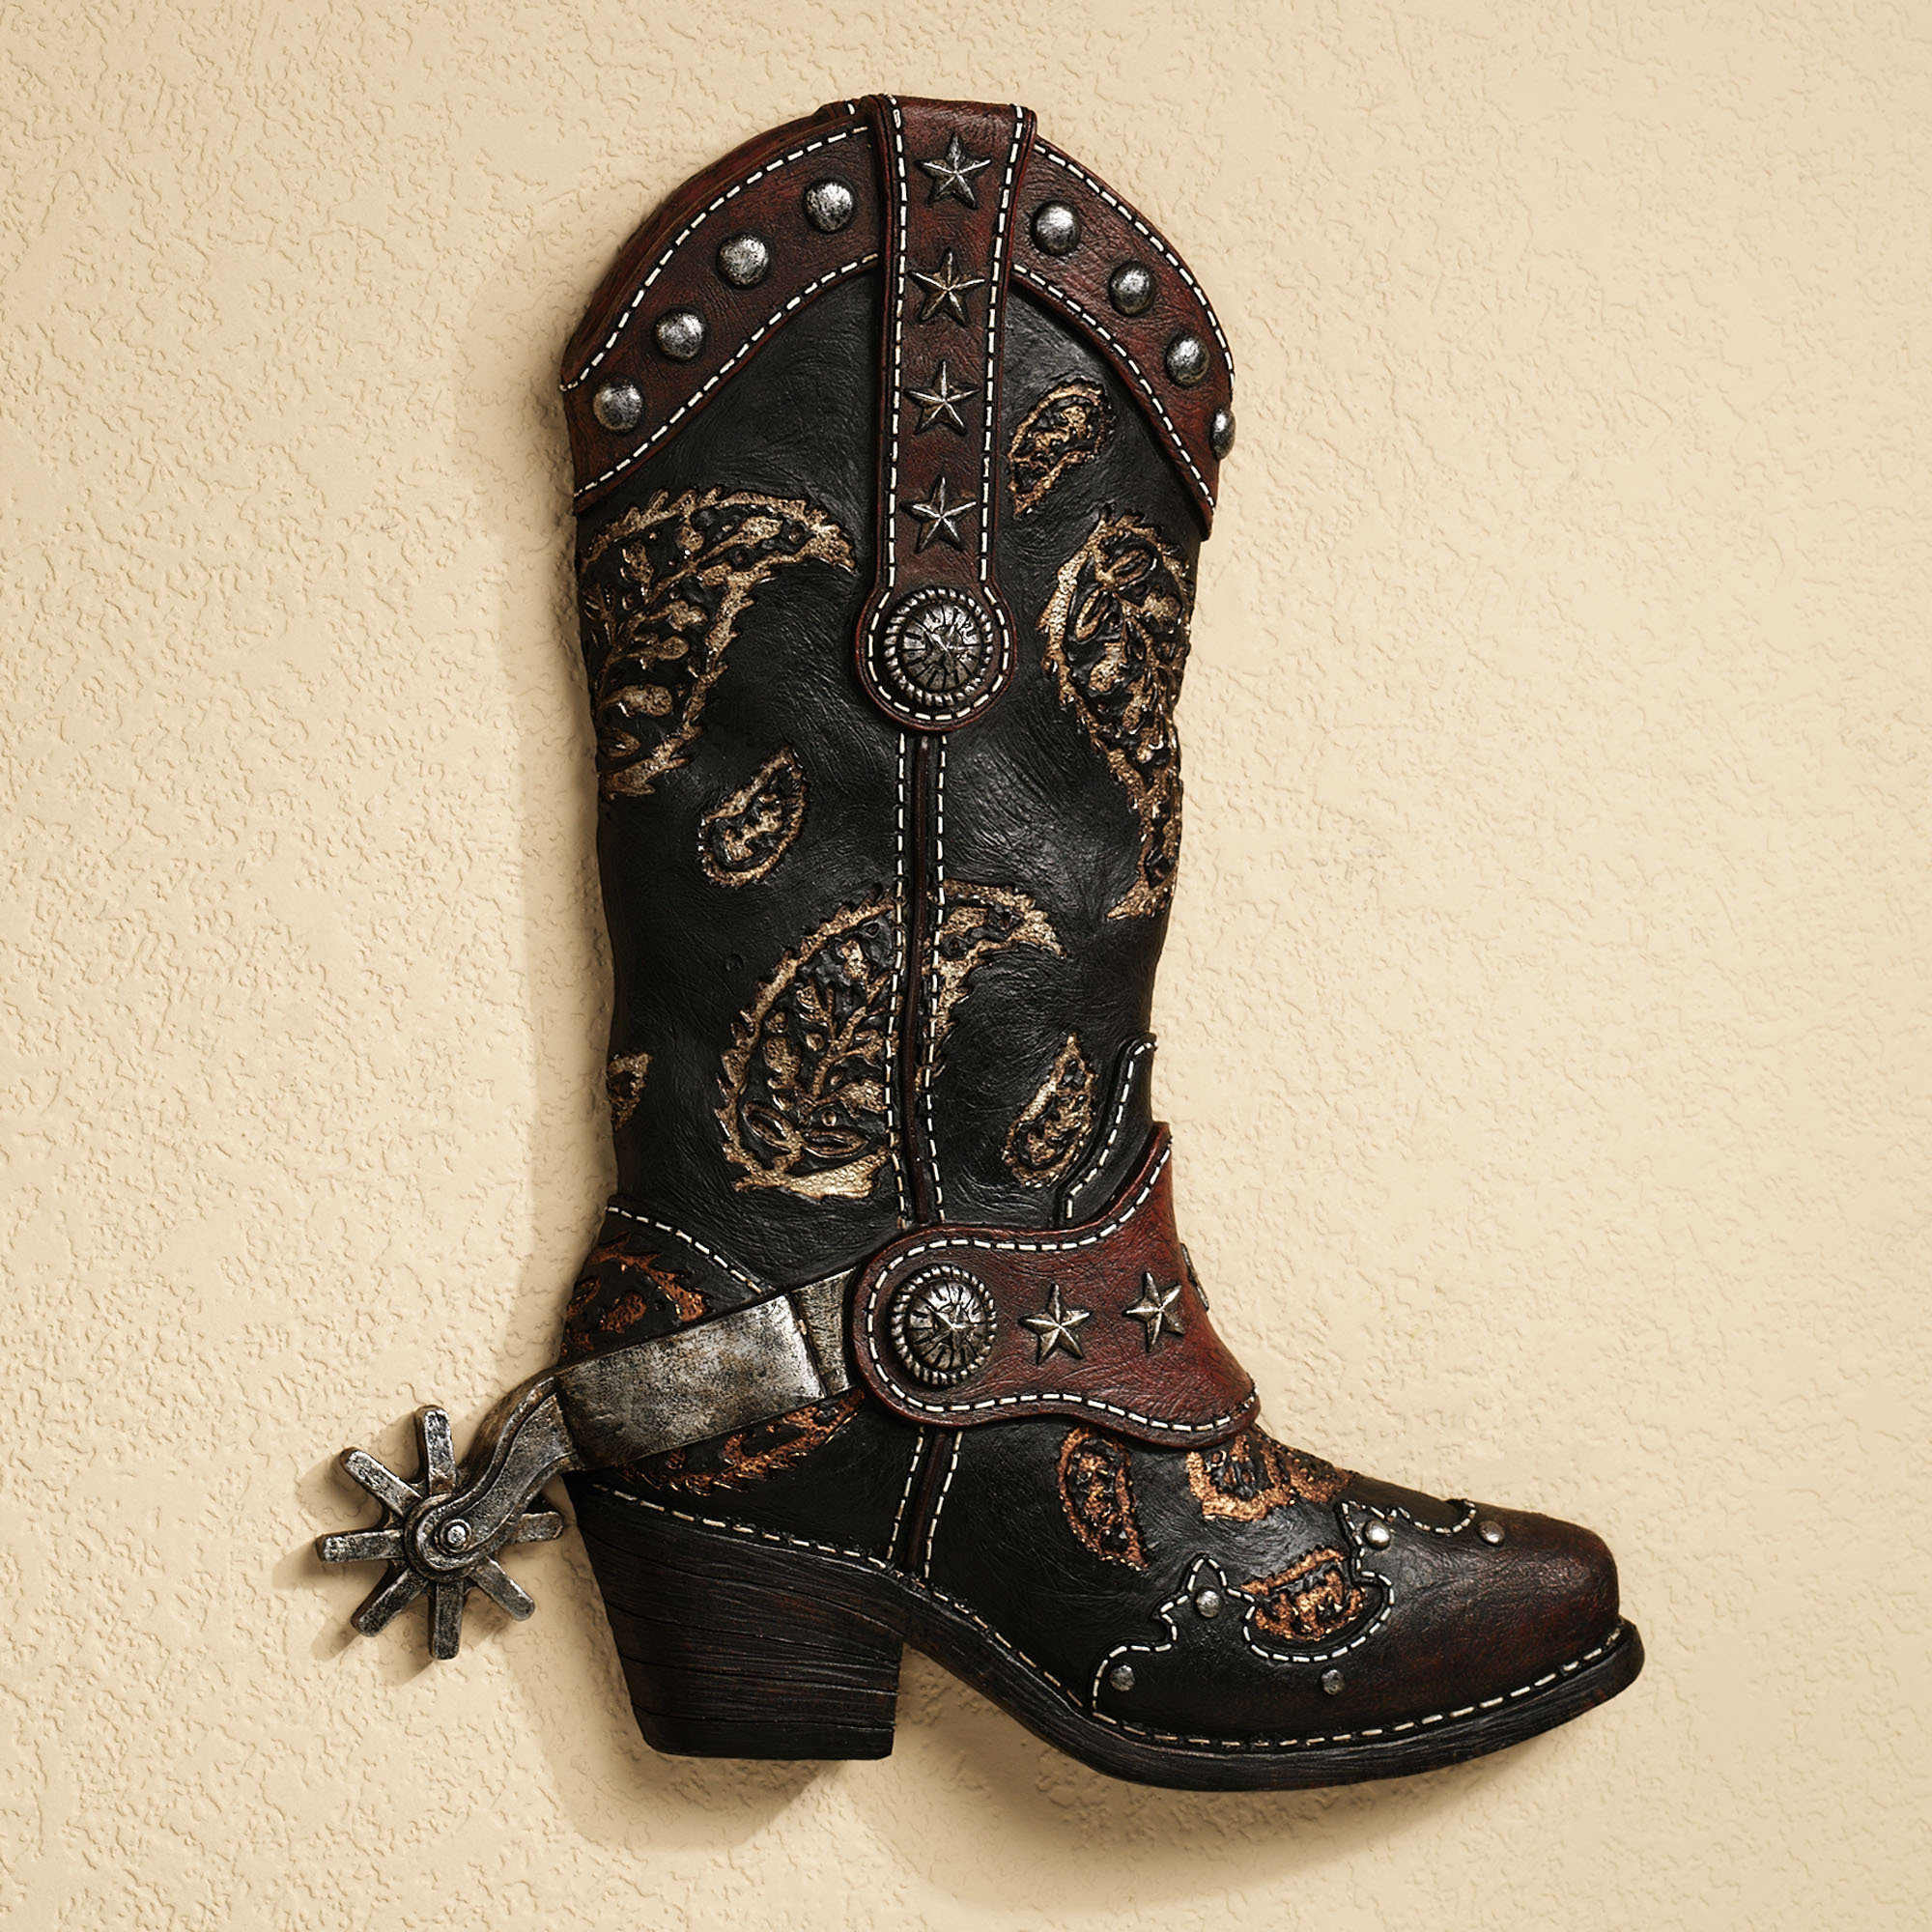 Western Cowboy Boots Wallpaper Boot Wall Art Black